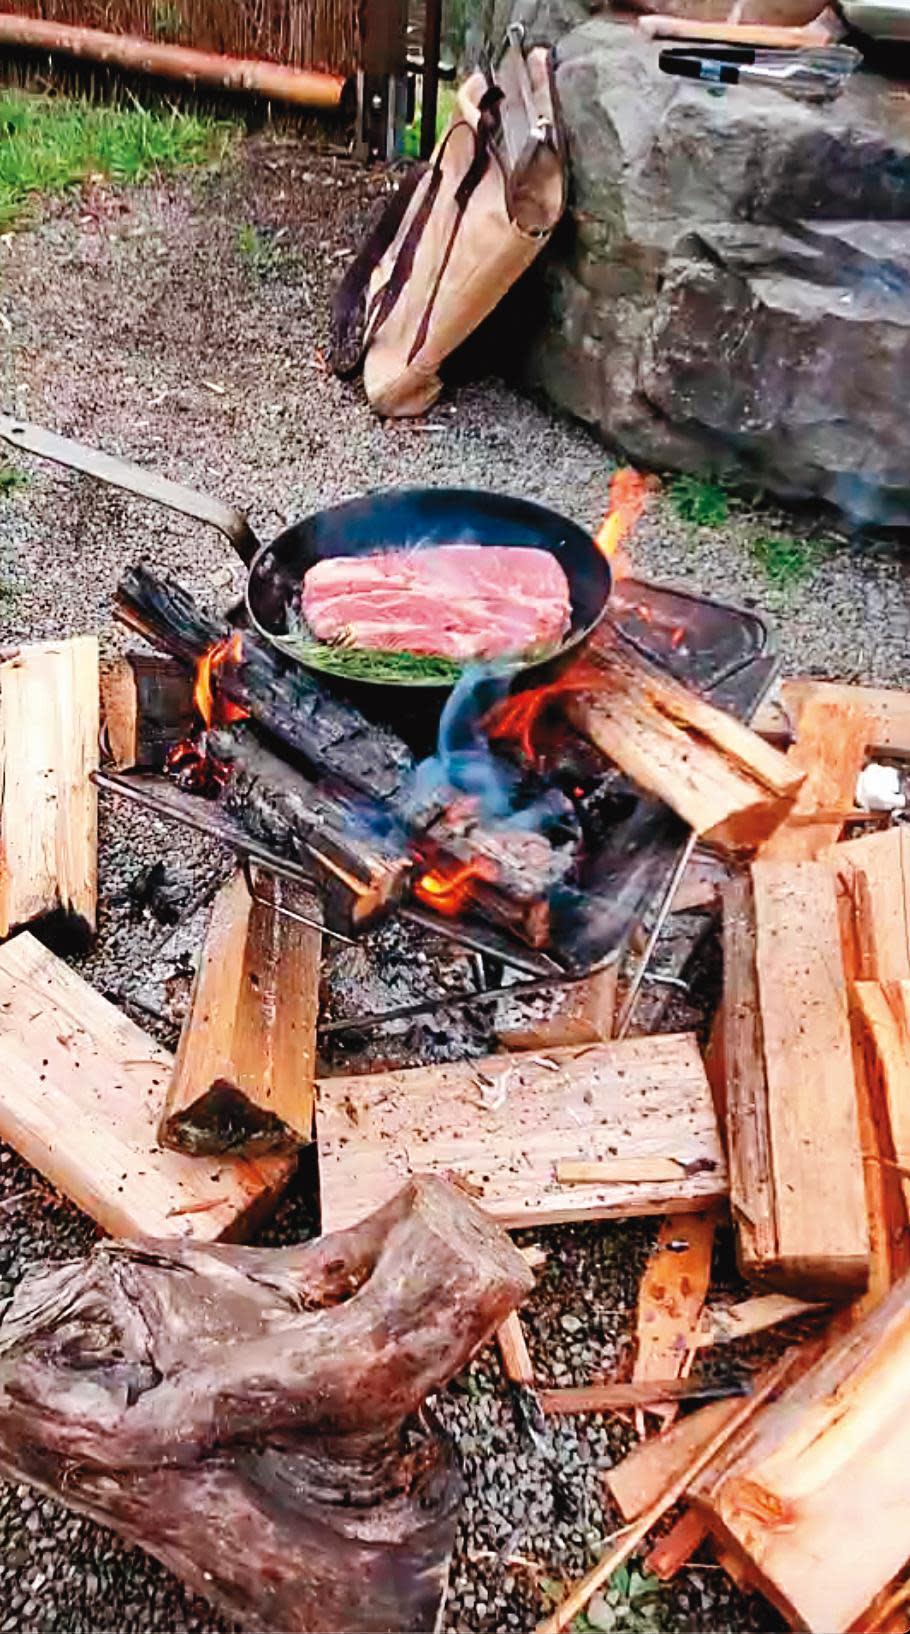 荒野的柴燒煎牛排或許火侯不像星級餐廳般均勻，但那股DIY的炭燒野味卻是無可取代。